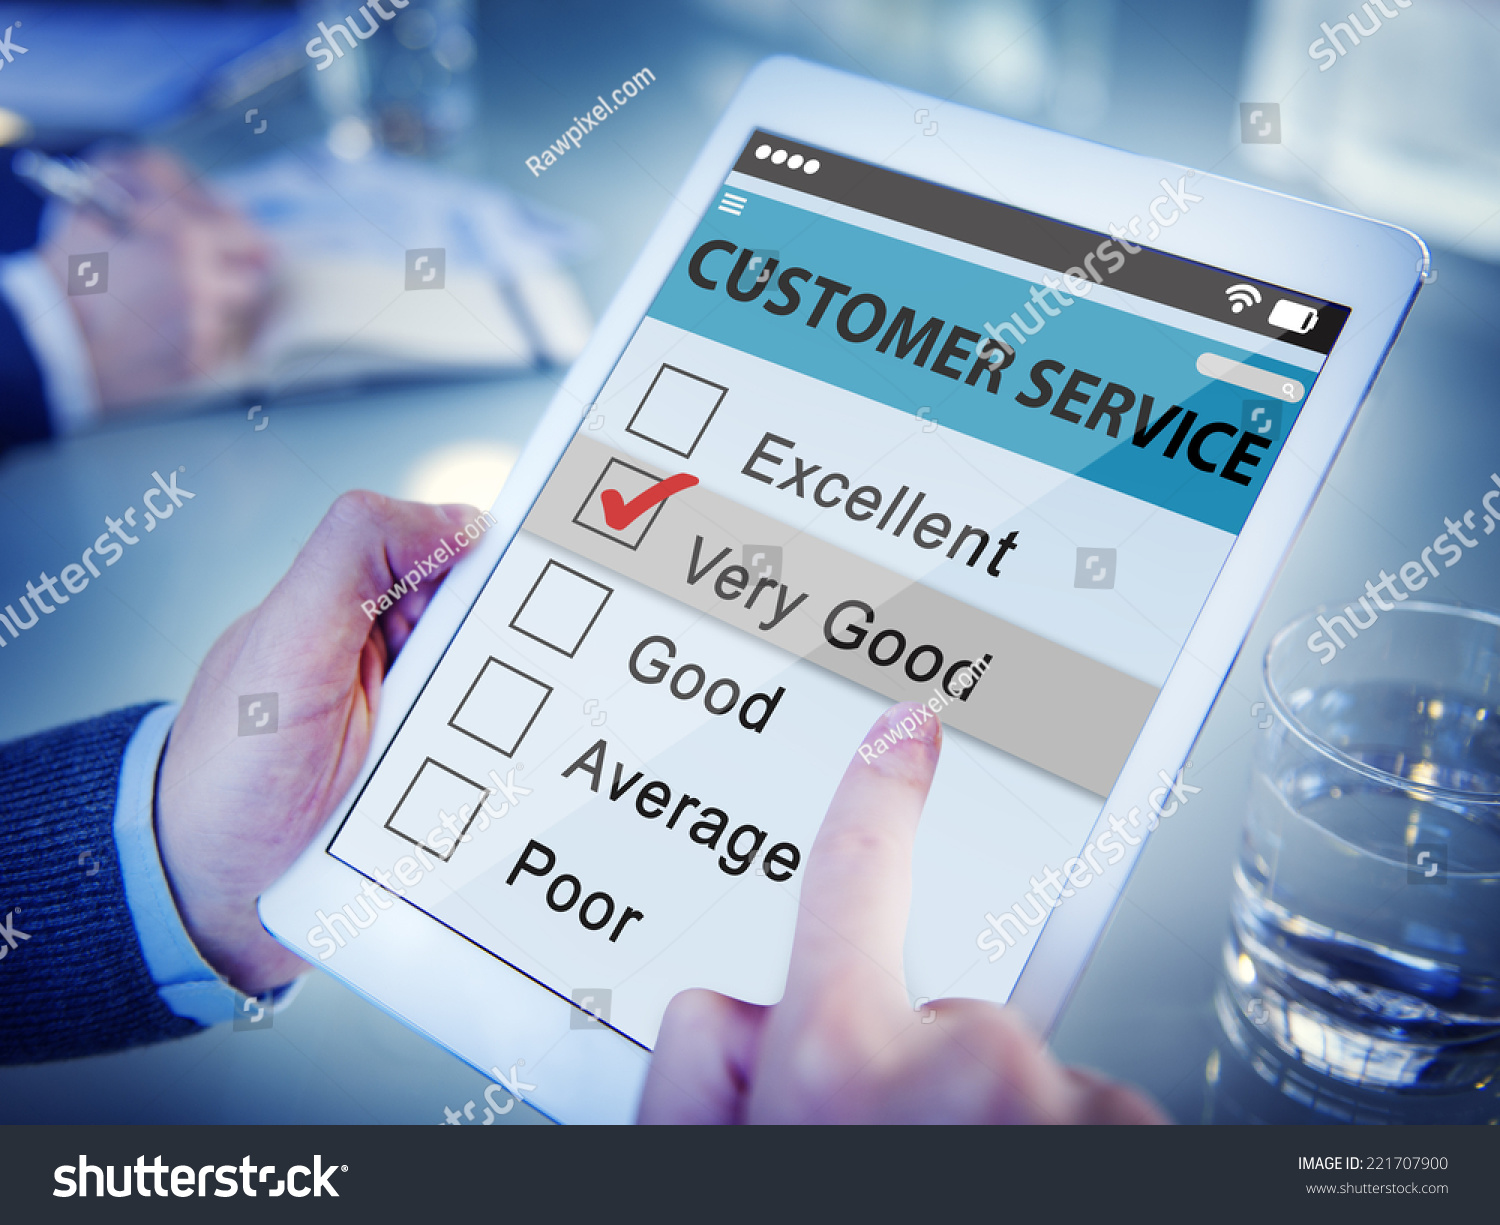 Define Excellent Customer Service | MyPerfectResume